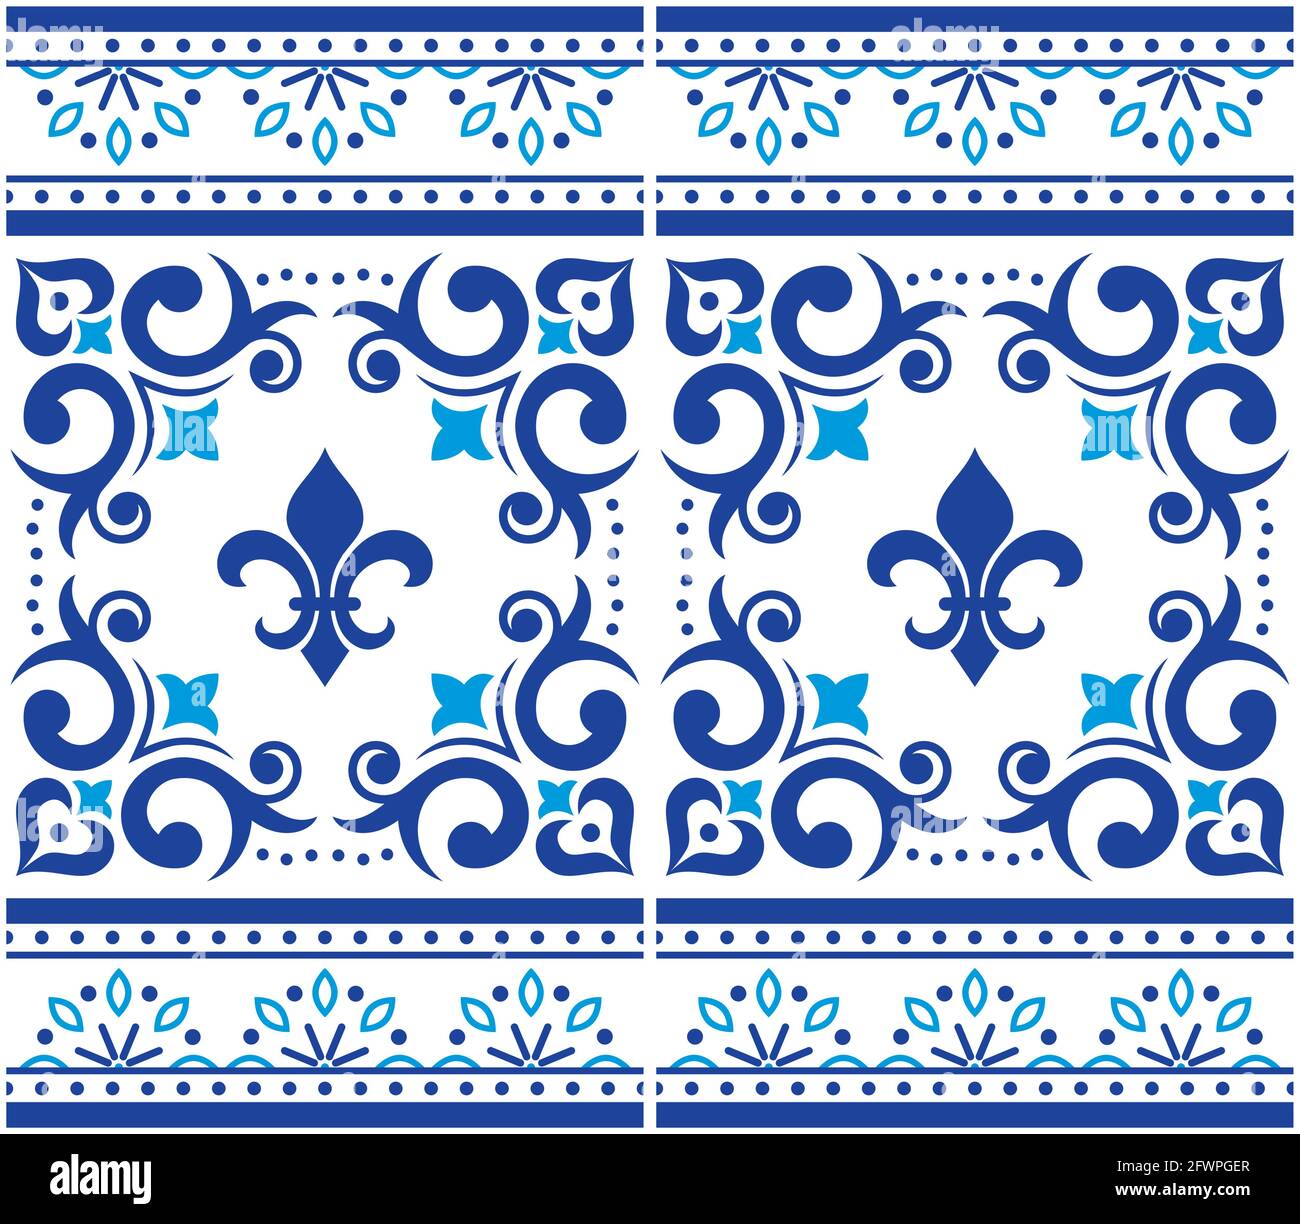 Azulejo Fliesen nahtloses Vektor-Muster - Lissabon Luxus-Stil, ornamentales Design mit Rand oder Rahmen von Kunst aus Portugal mit Fluer de Lis an inspiriert Stock Vektor